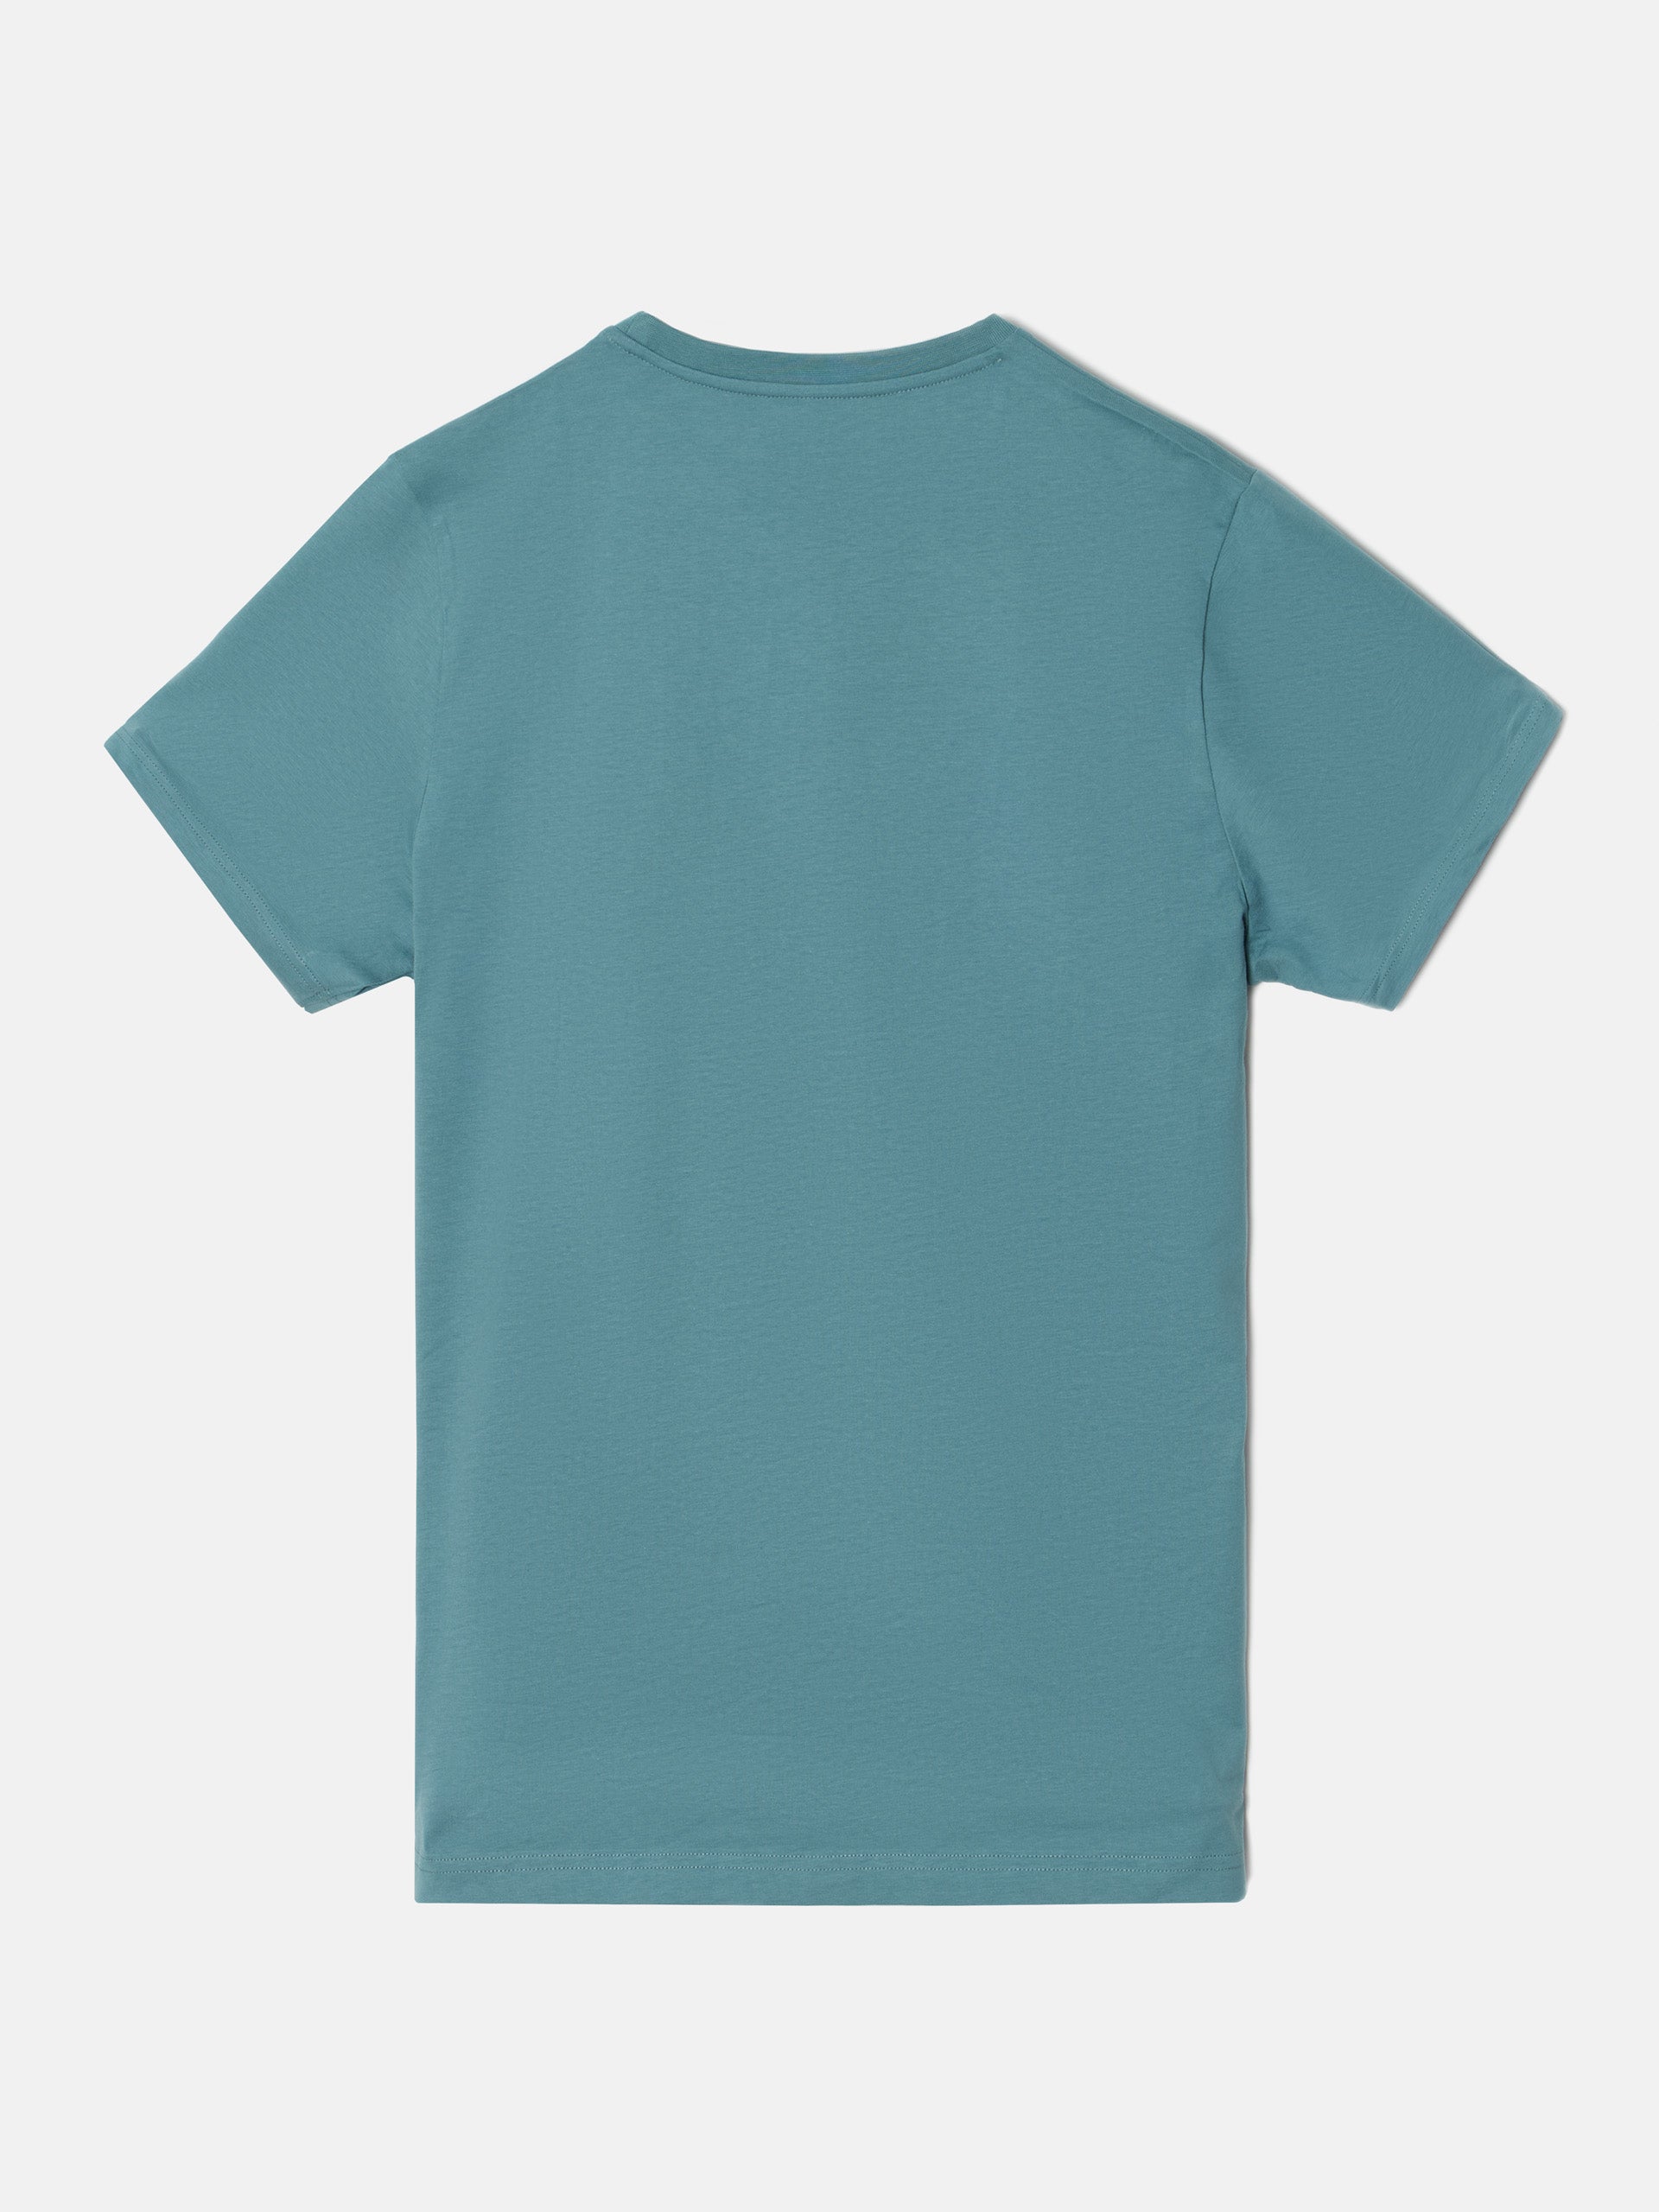 T-shirt silbon mini logo vert moyen